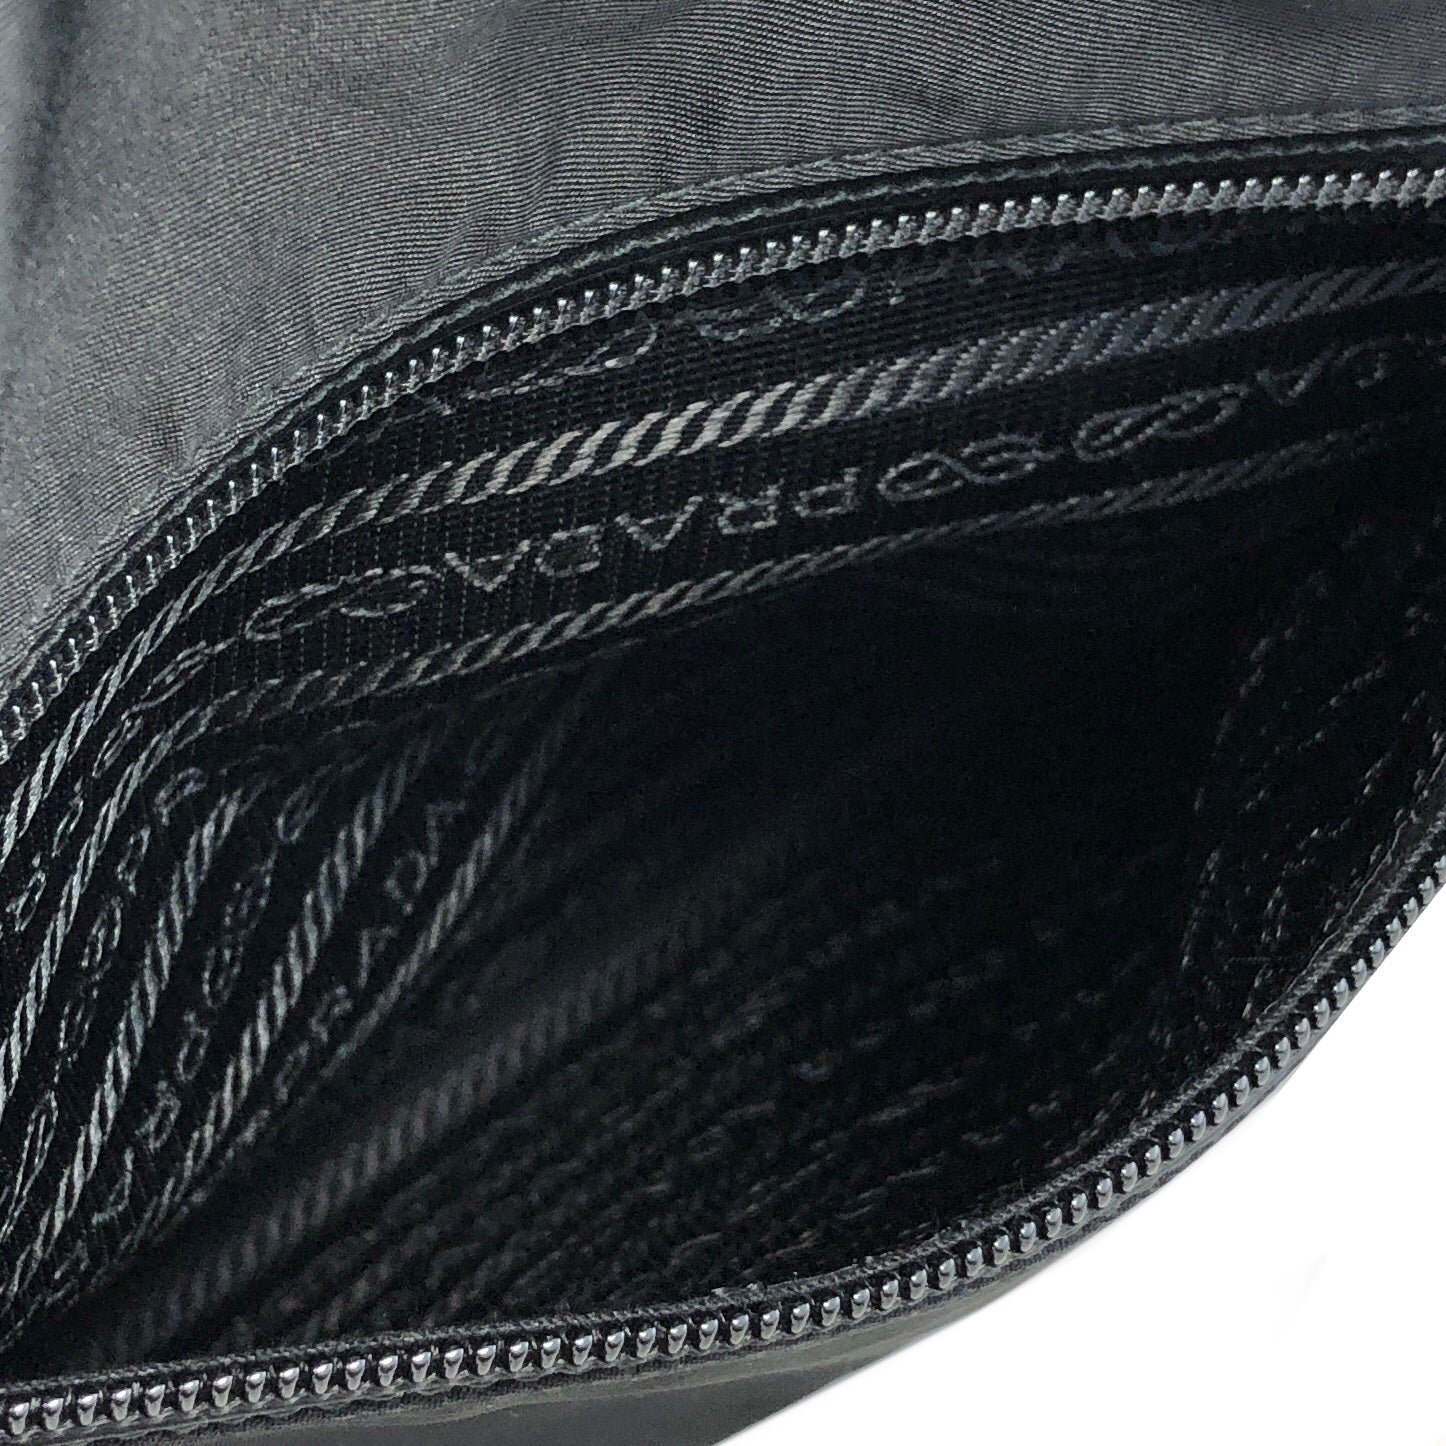 PRADA Triangle Logo Nylon Handbag Boston bag Black Vintage aki77w –  VintageShop solo